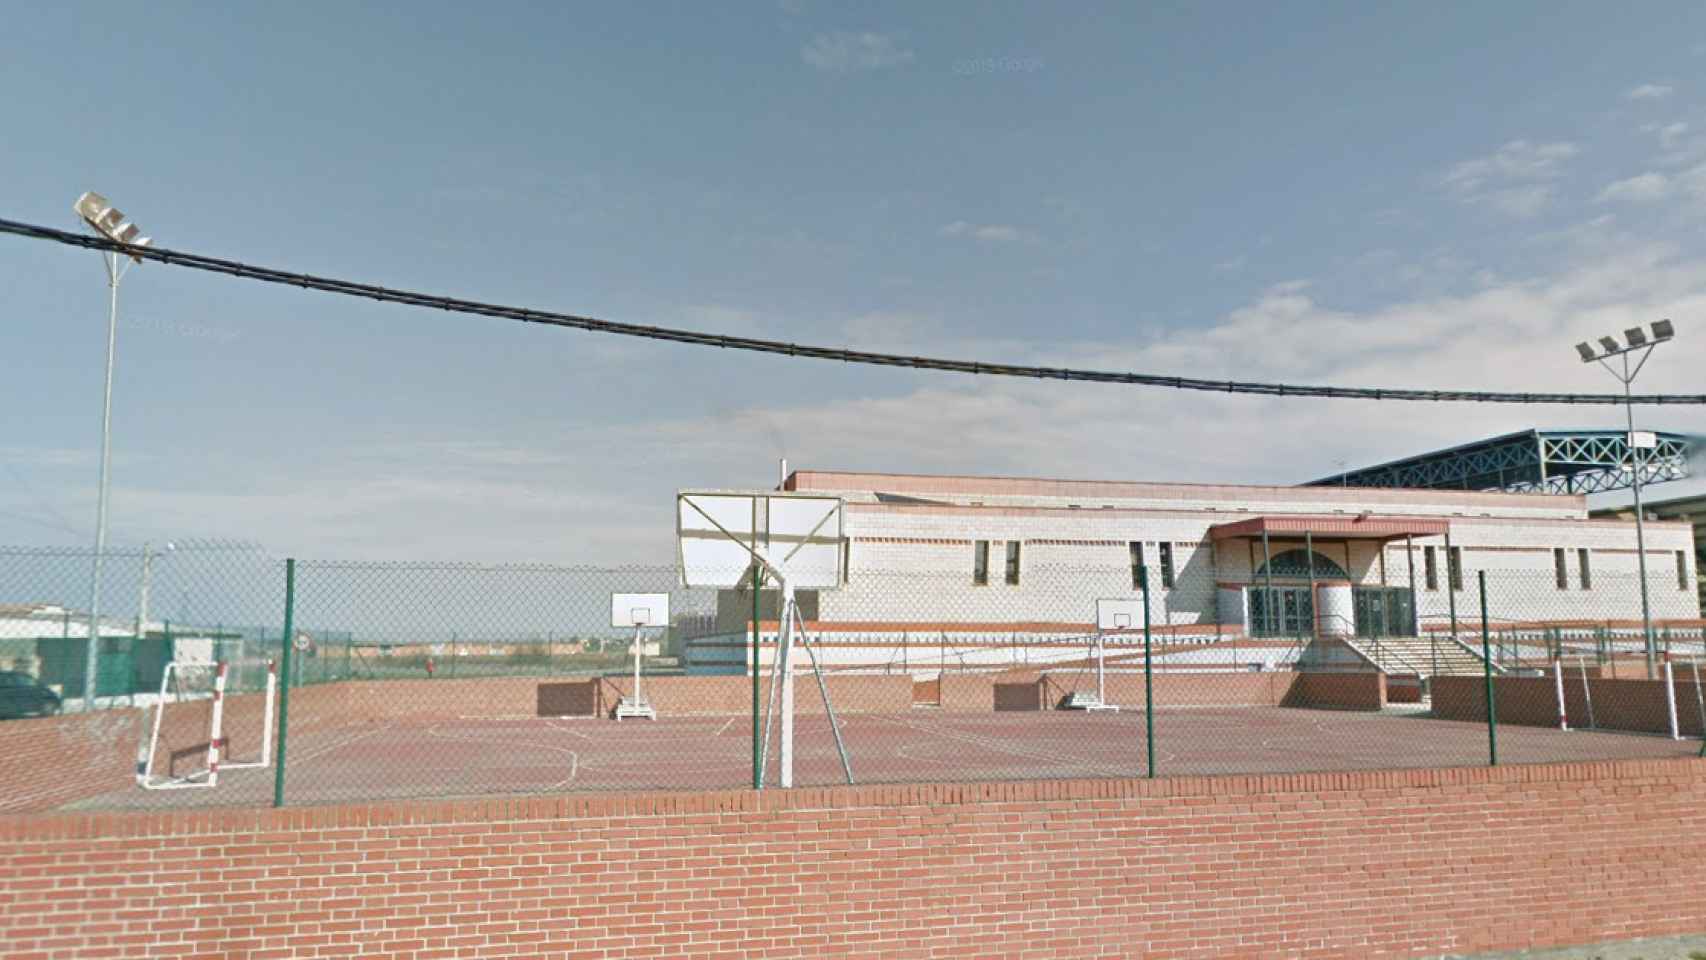 Campo de fútbol La Rosaleda en Benavente, desde fuera